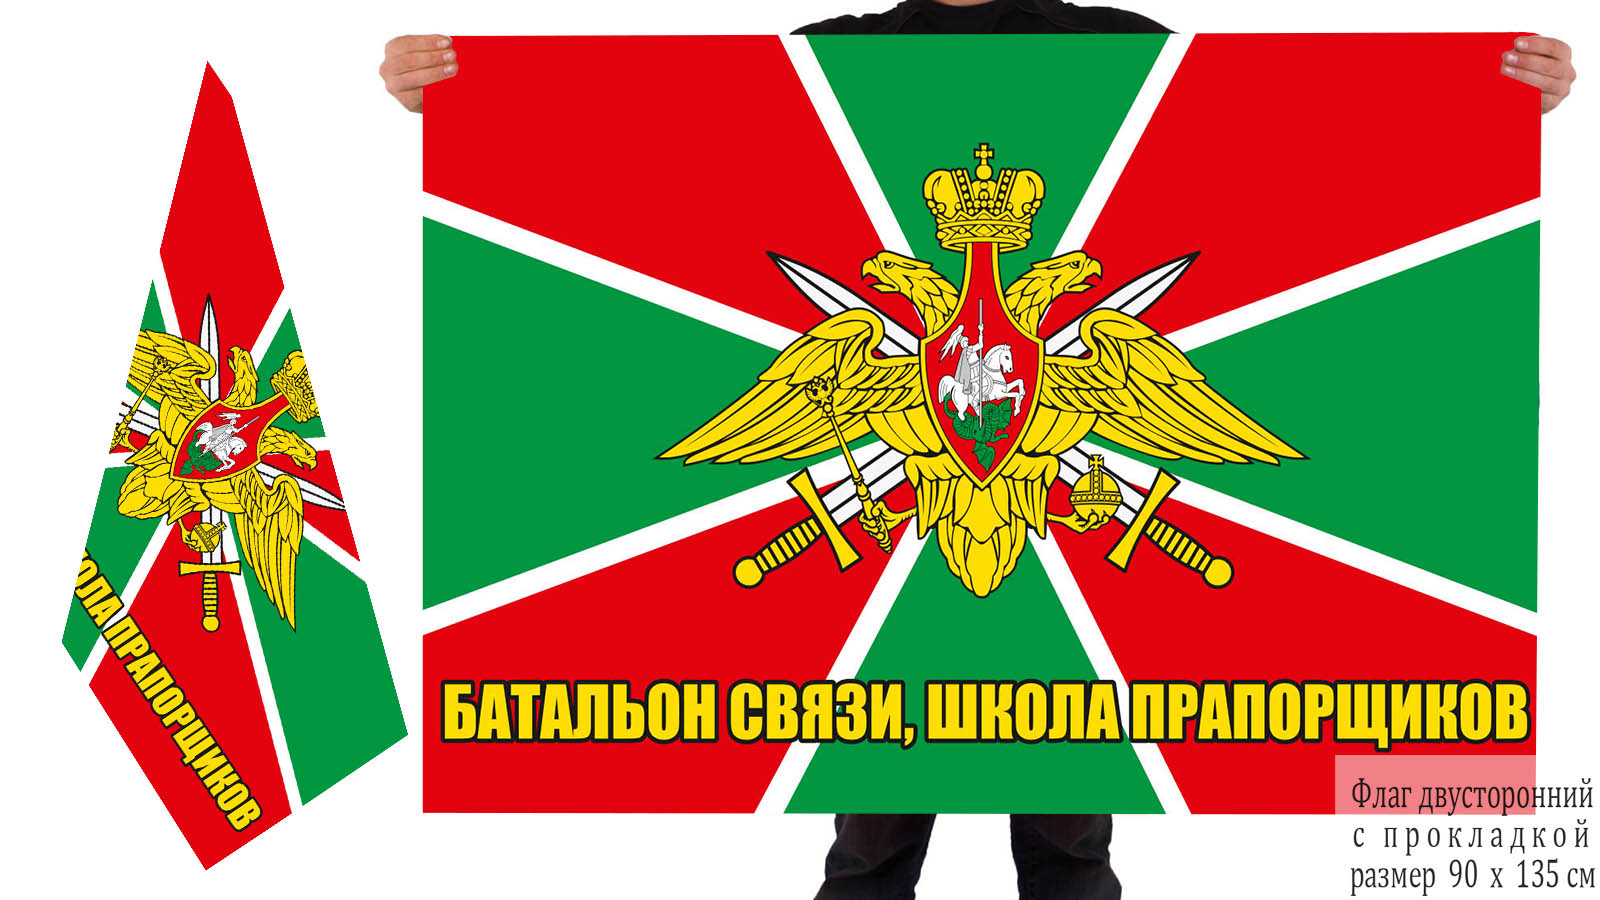  Двусторонний флаг Отдельного батальона связи и школы прапорщиков